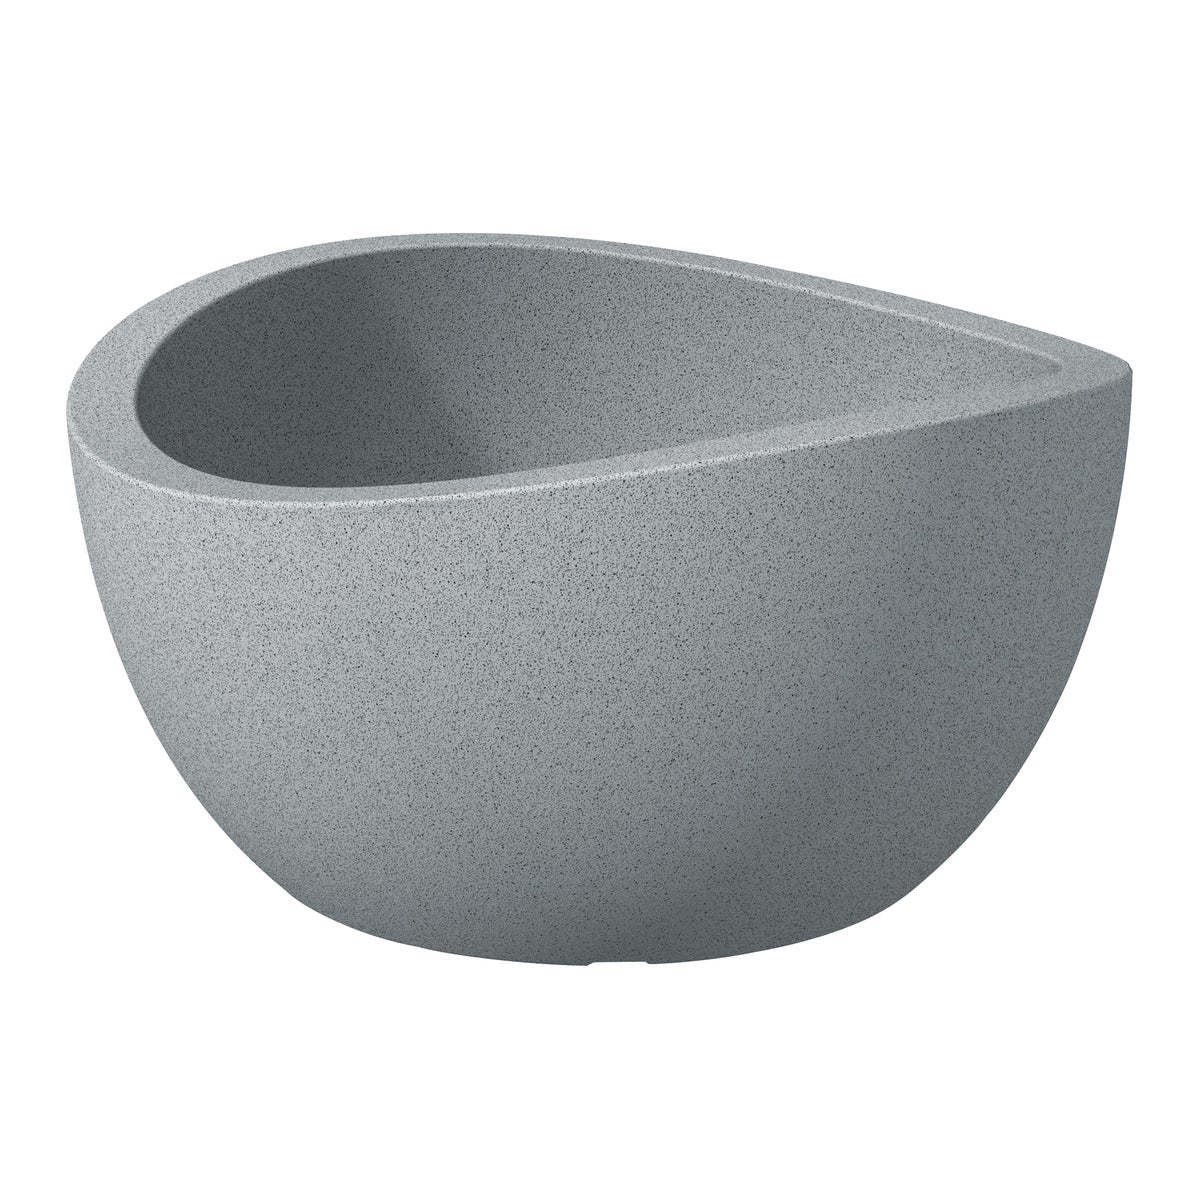 Scheurich Wave Globe Bowl 40, Pflanzschale/Blumentopf/Pflanzkübel, rund,  aus Kunststoff Farbe: Stony Grey, 39,3 cm Durchmesser, 21 cm hoch, 12 l Vol.